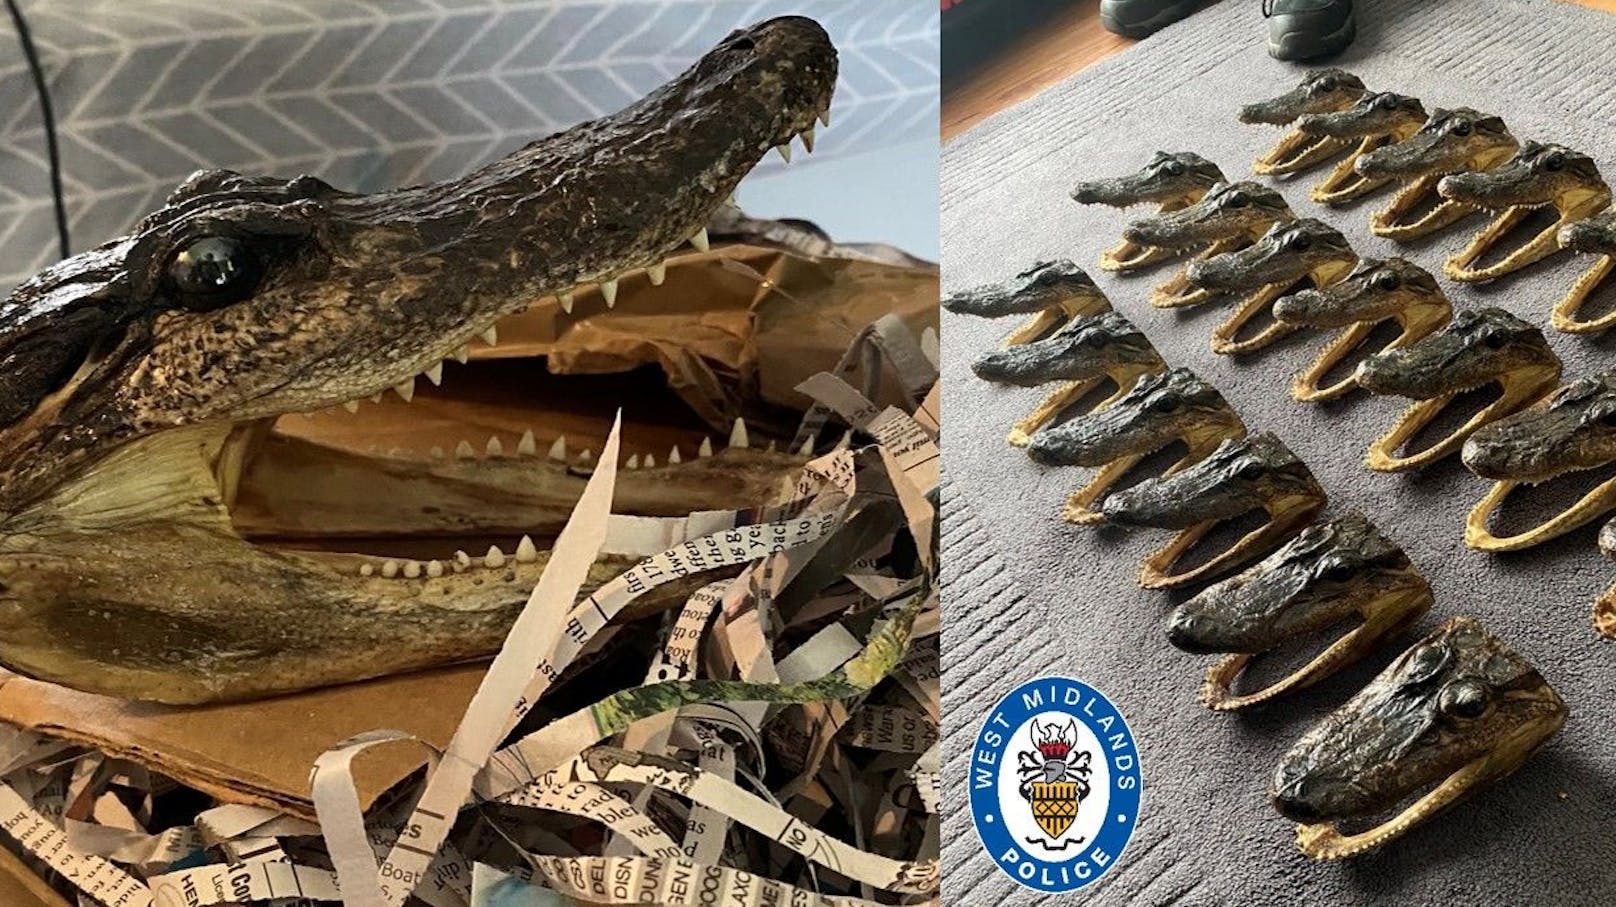 80 Alligator Köpfe wurden bei einer Hausdurchsuchung gefunden. 